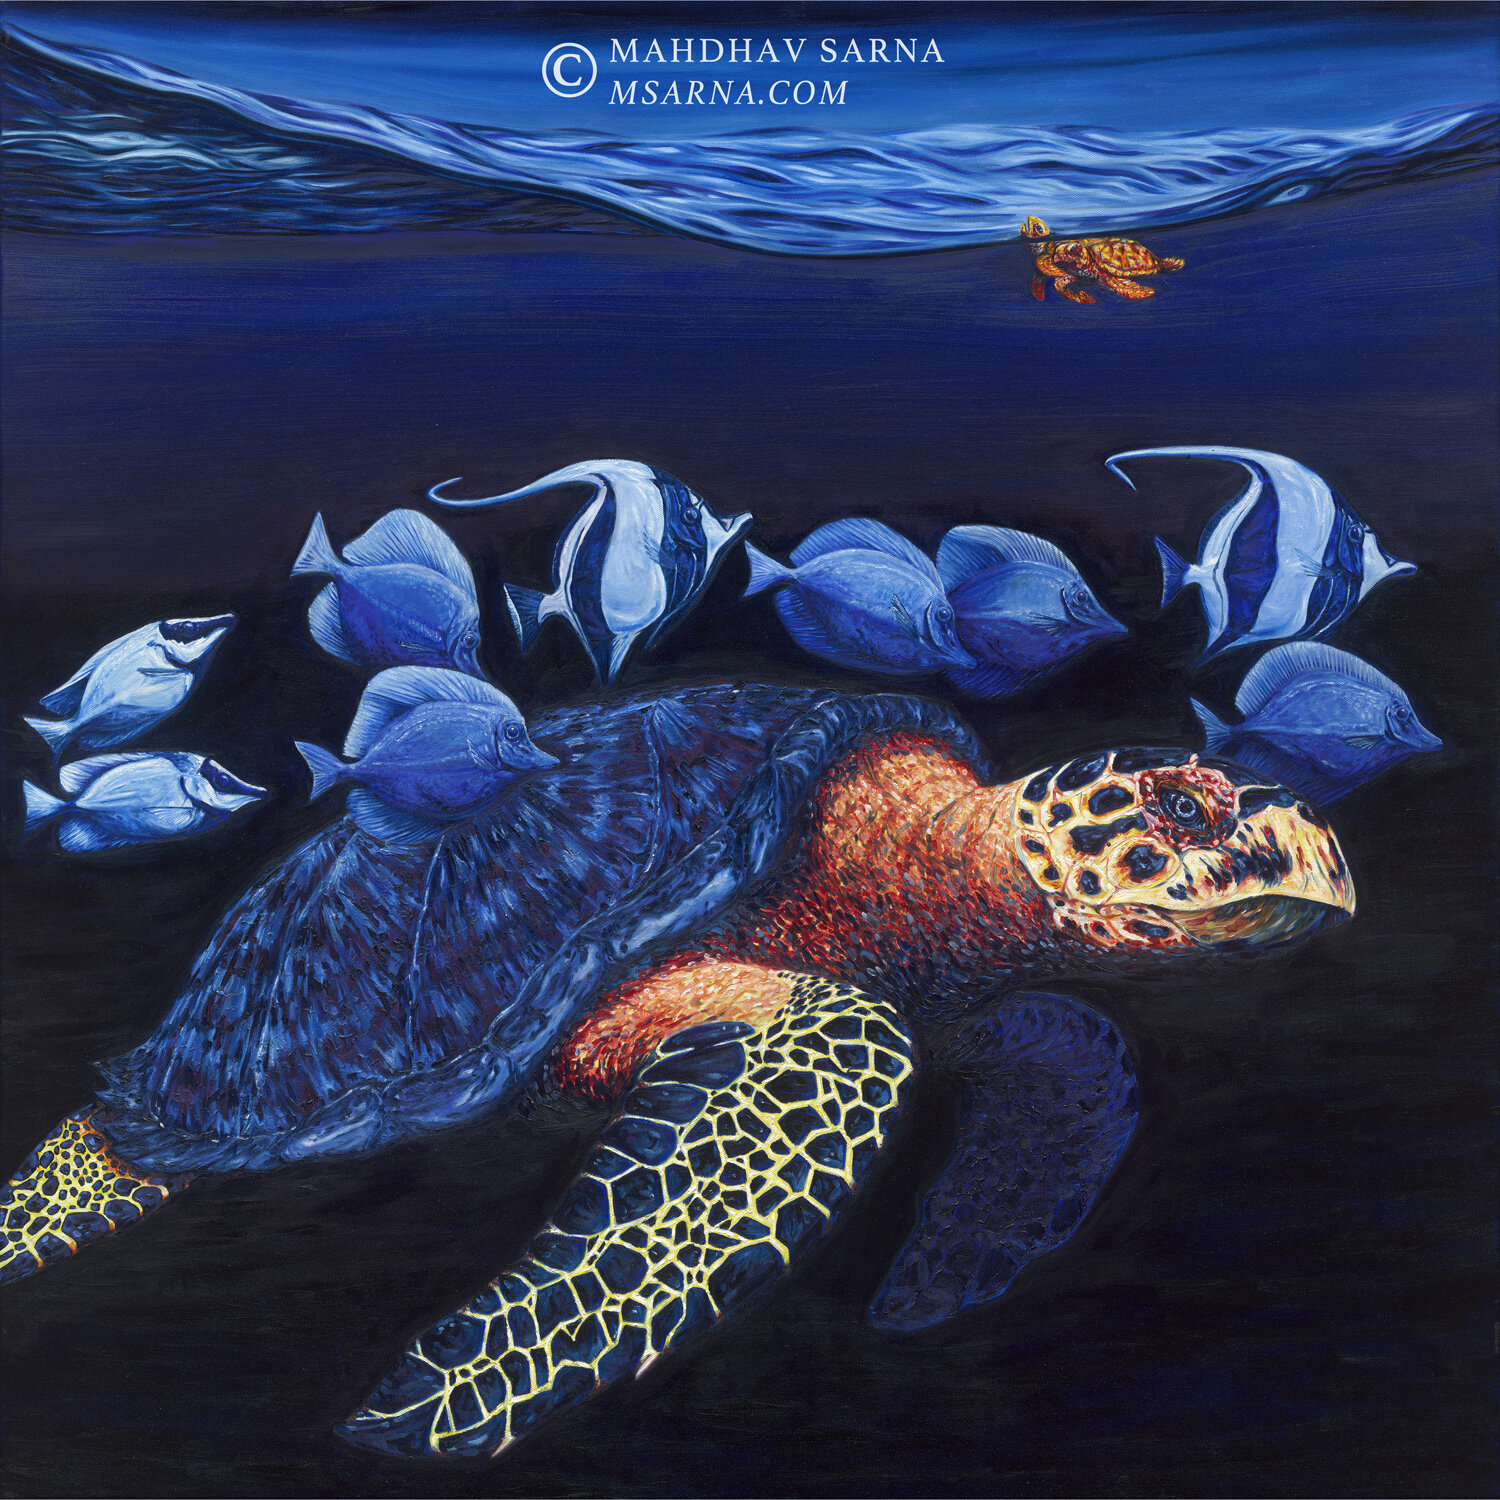 hawksbill turtle oil painting aggp wildlife art mahdhav sarna 01.jpg